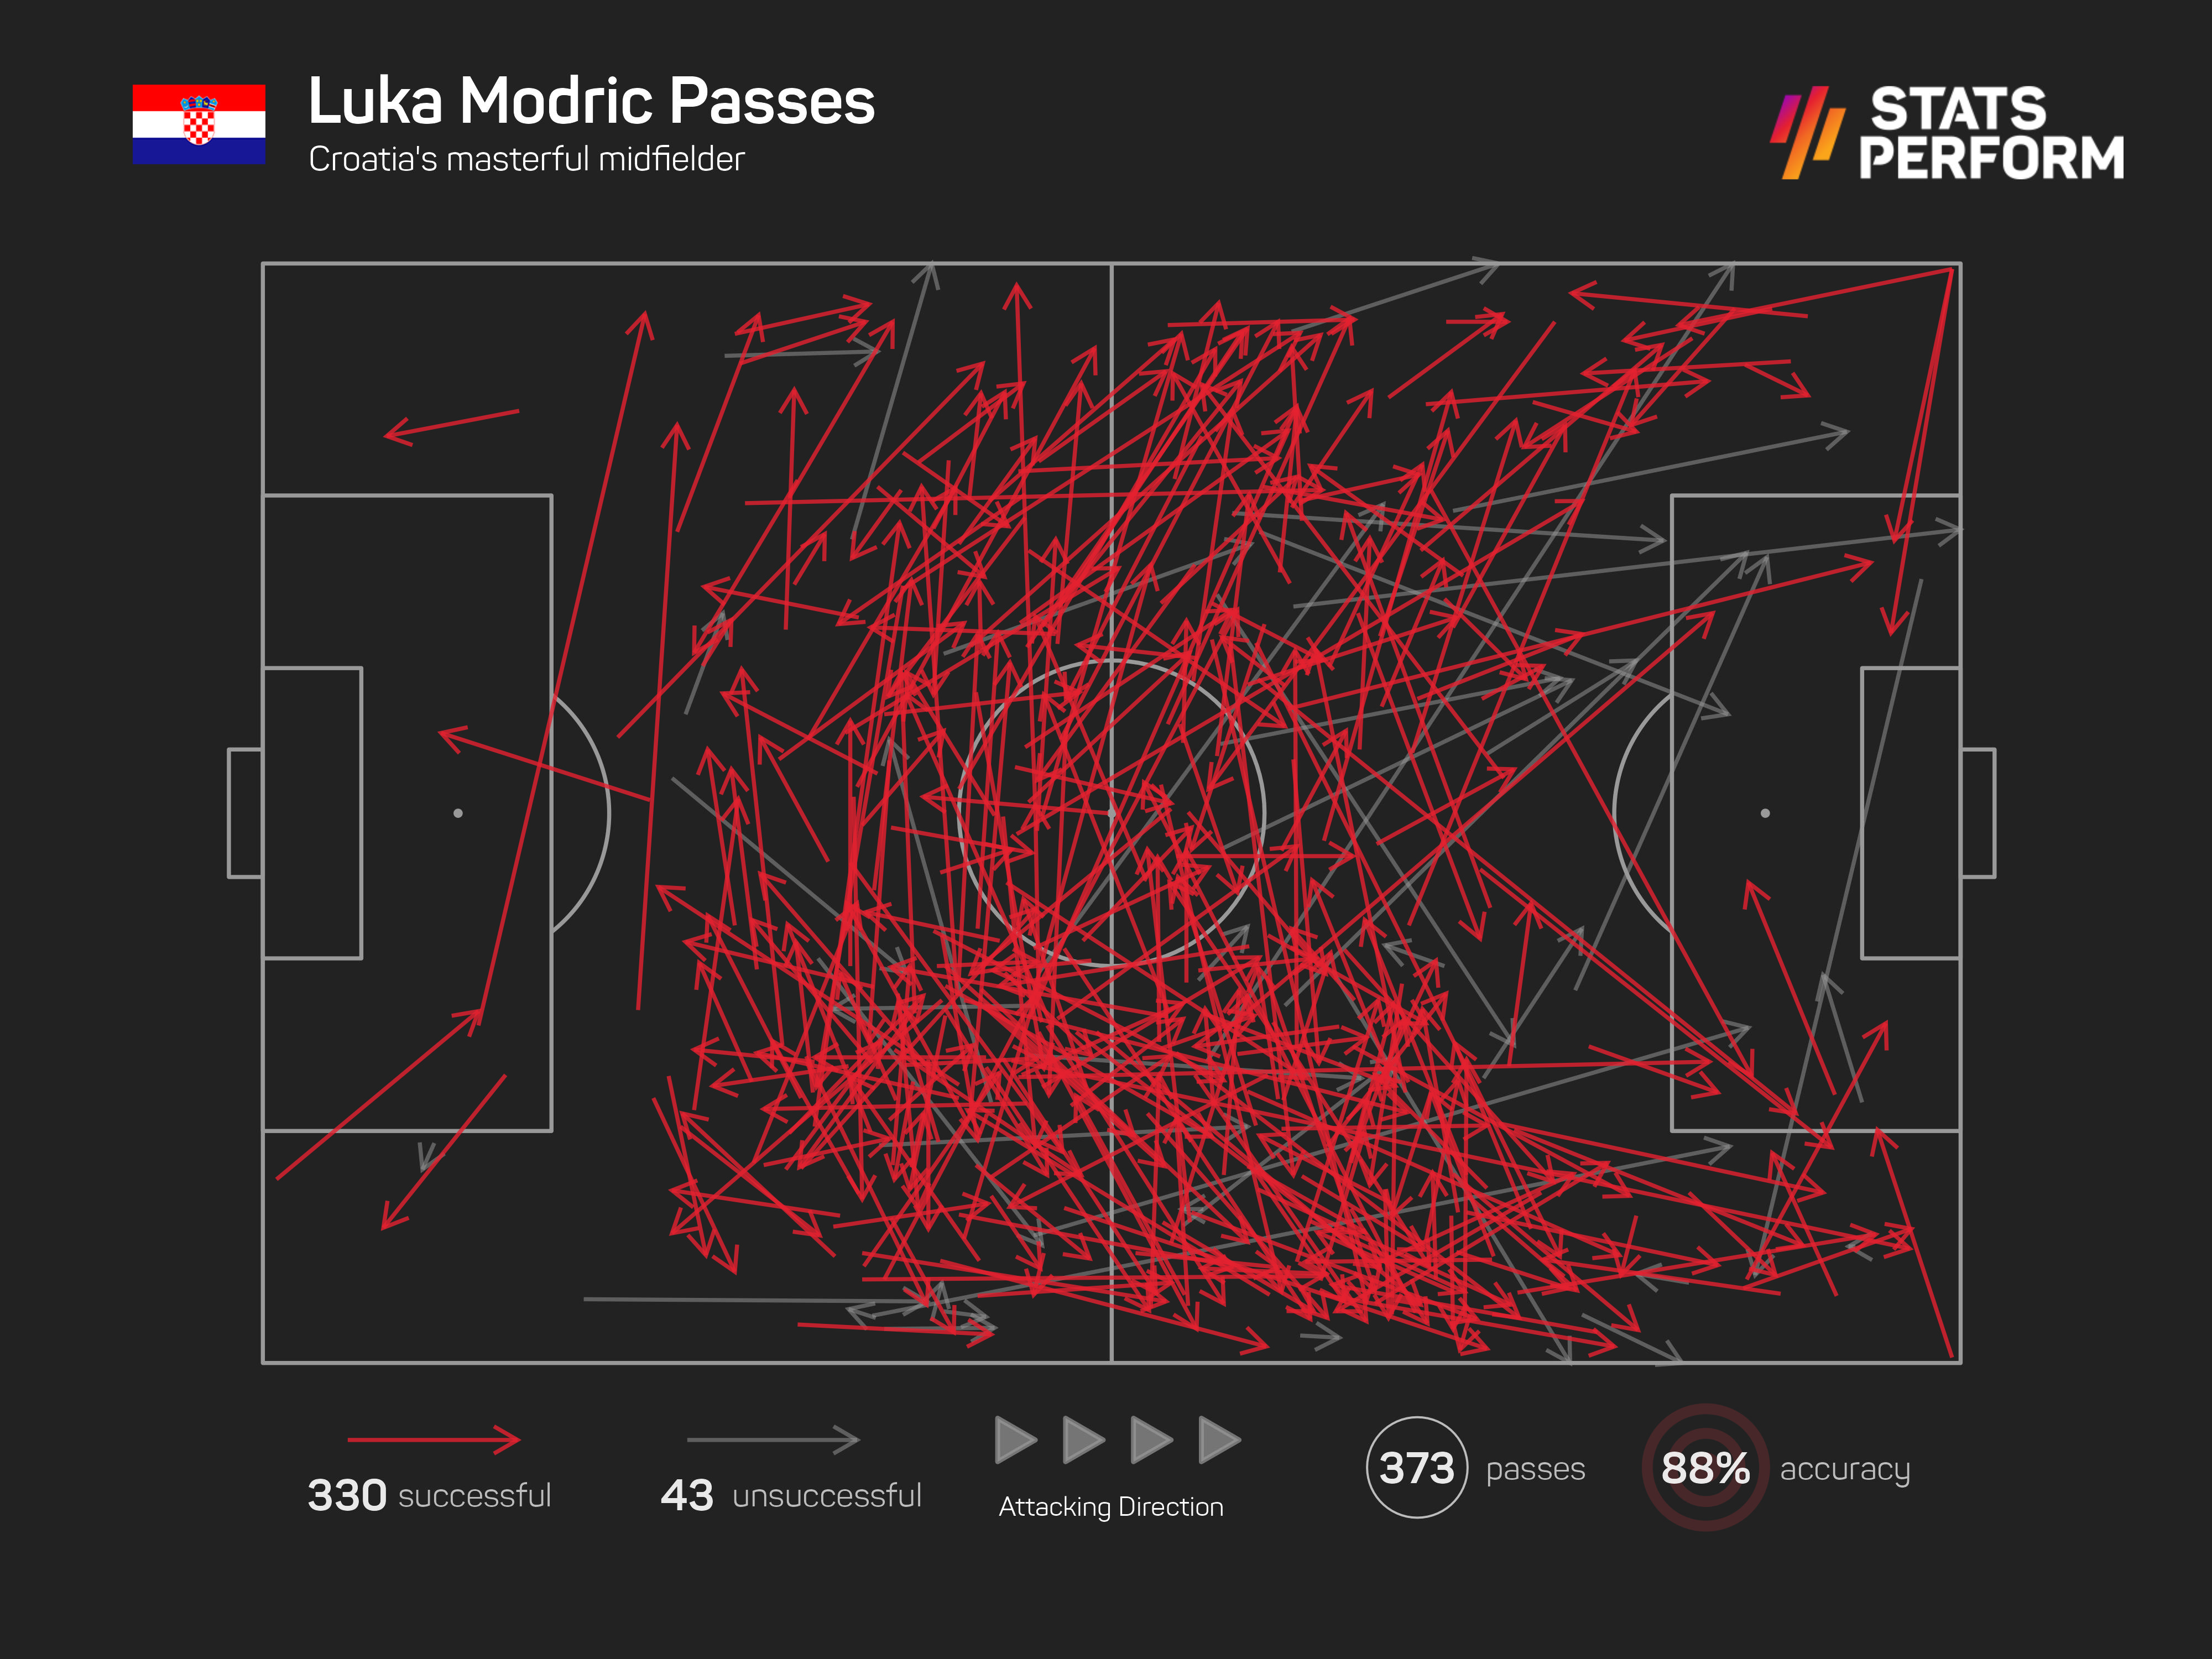 Luka Modric's has been sensational in Croatia's midfield